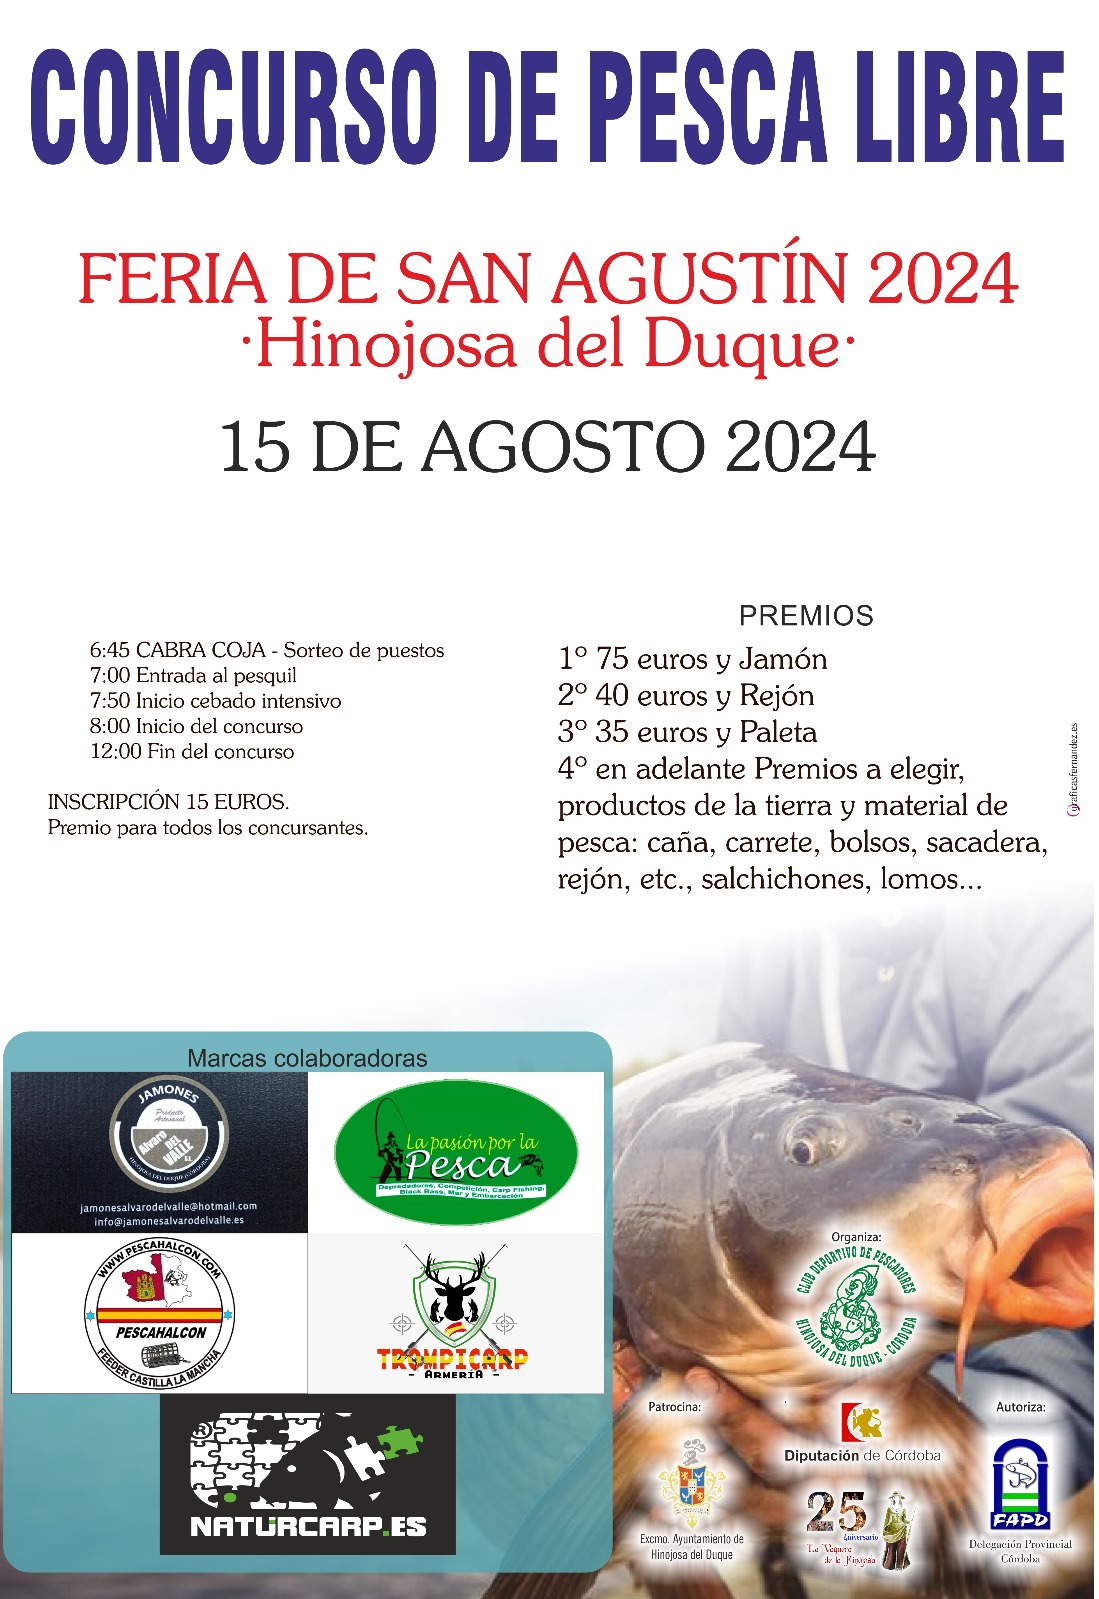 CONCURSO DE PESCA LIBRE: FERIA DE SAN AGUSTÍN 2024